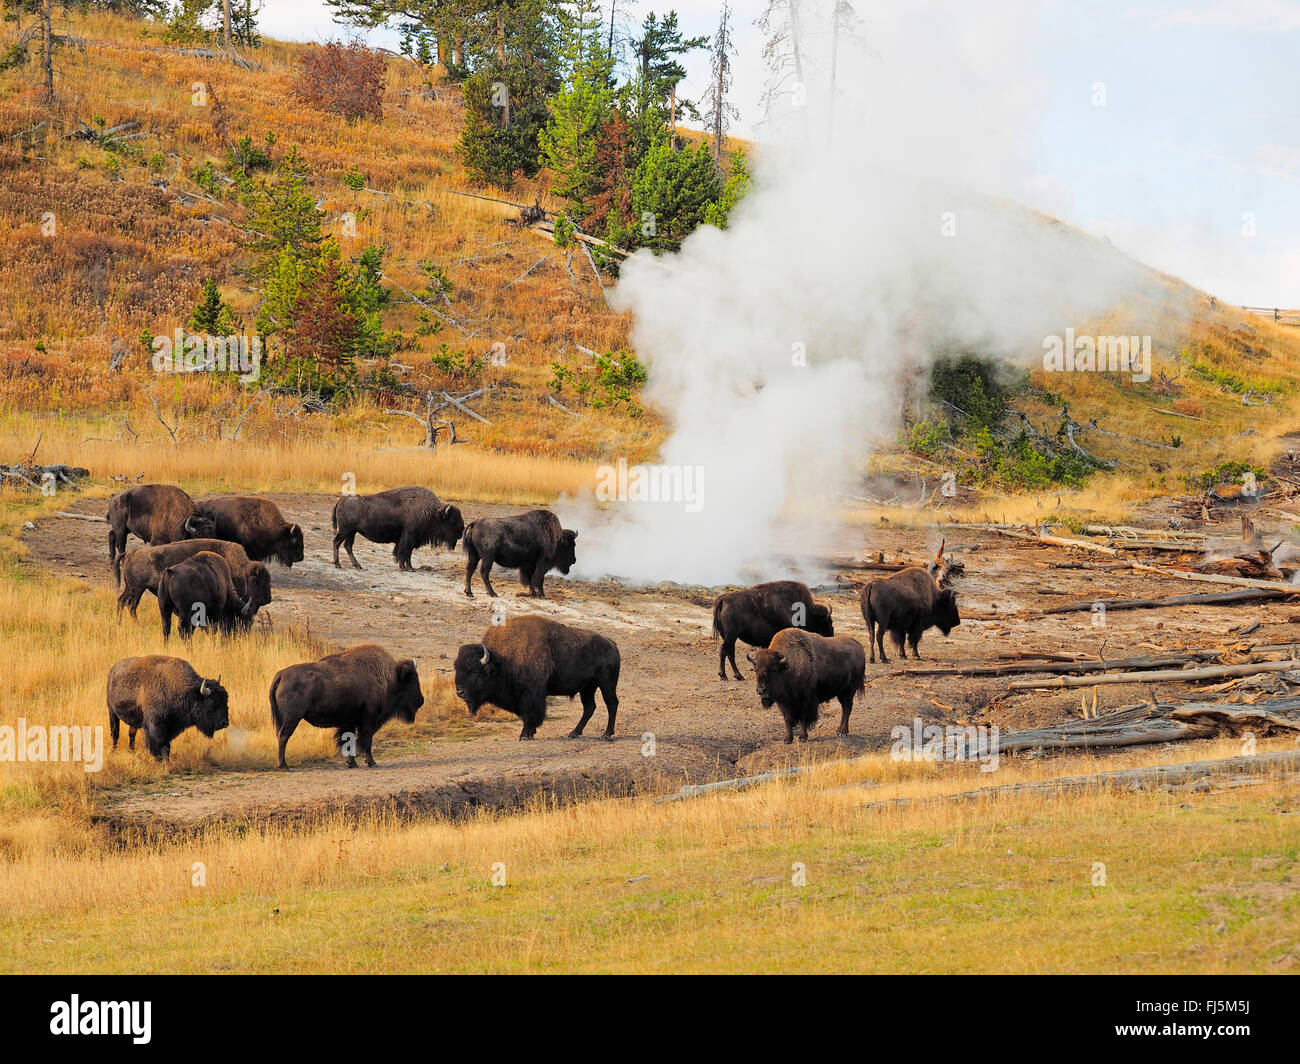 Bisontes americanos, Buffalo (Bison bison), búfalos en hot spring, EE.UU., el Parque Nacional Yellowstone, Wyoming, West Thumb Geysir Cuenca Foto de stock